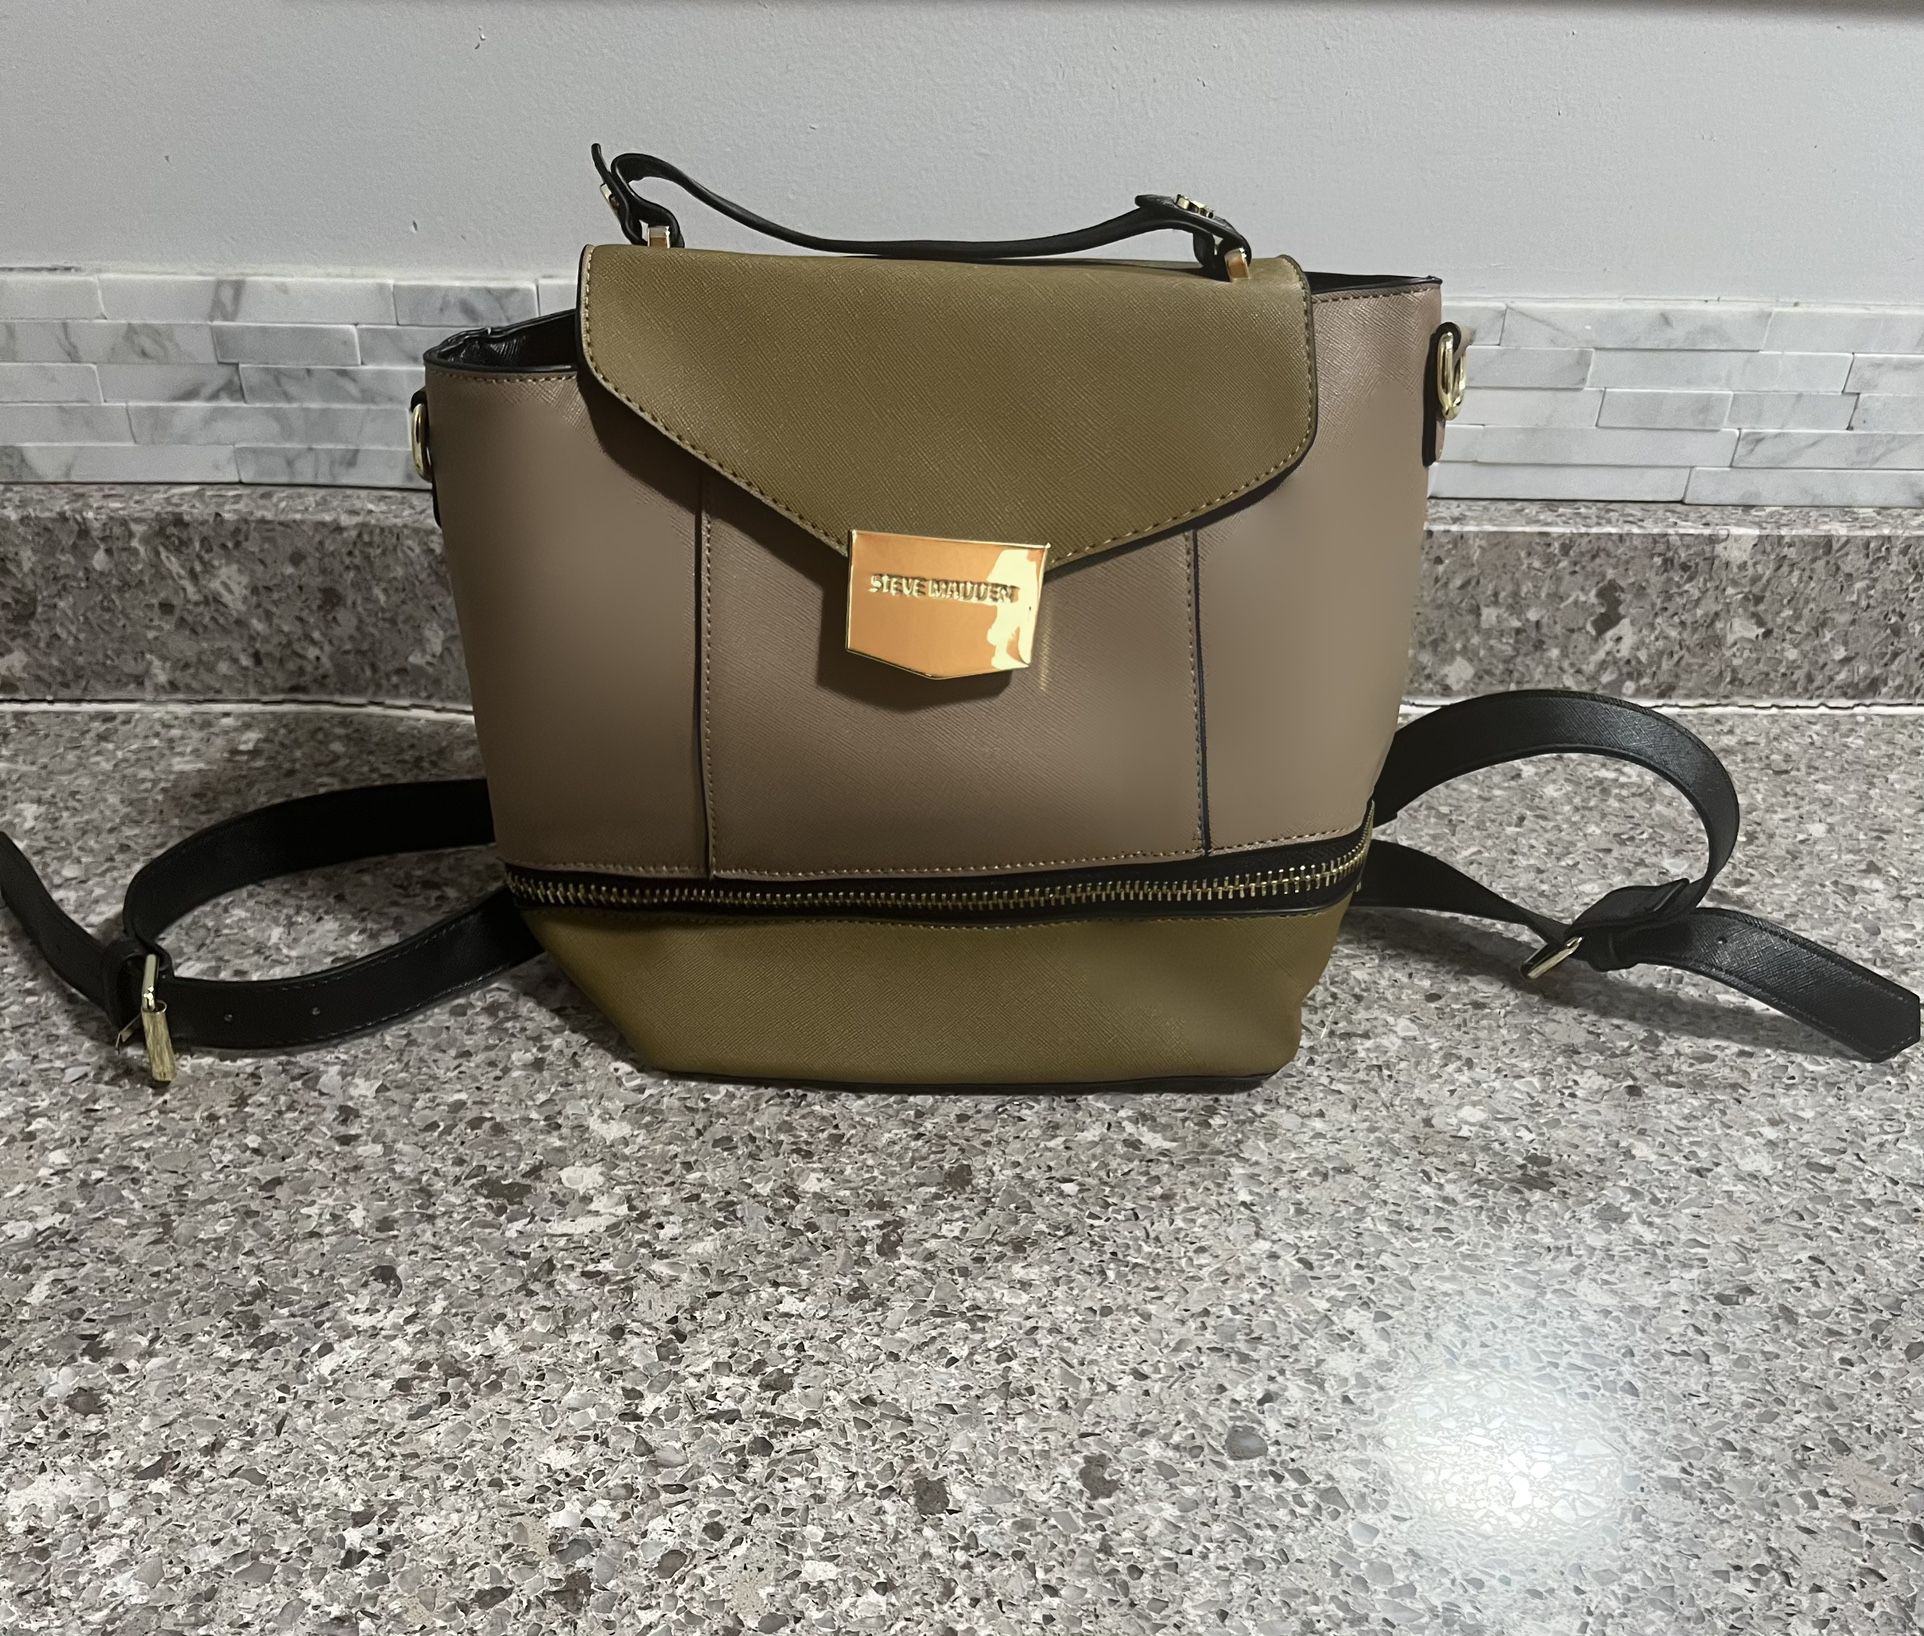 Steve Madden Olive Mini Backpack Bag Brand New